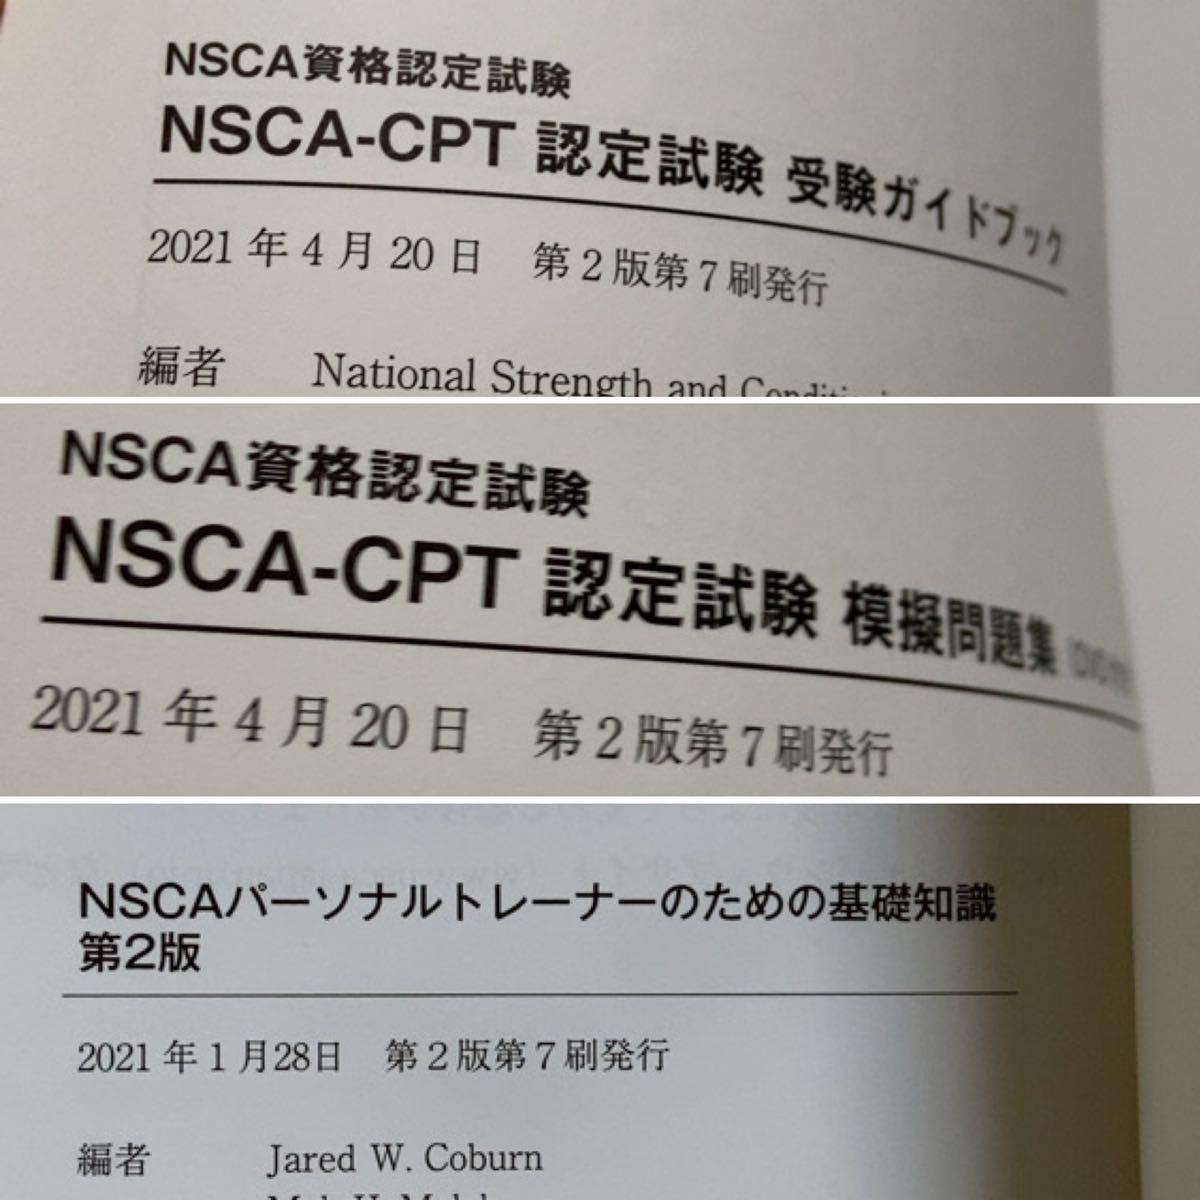 NSCAパーソナルトレーナーのための基礎知識 第2版 NSCA-CPT模擬問題集 